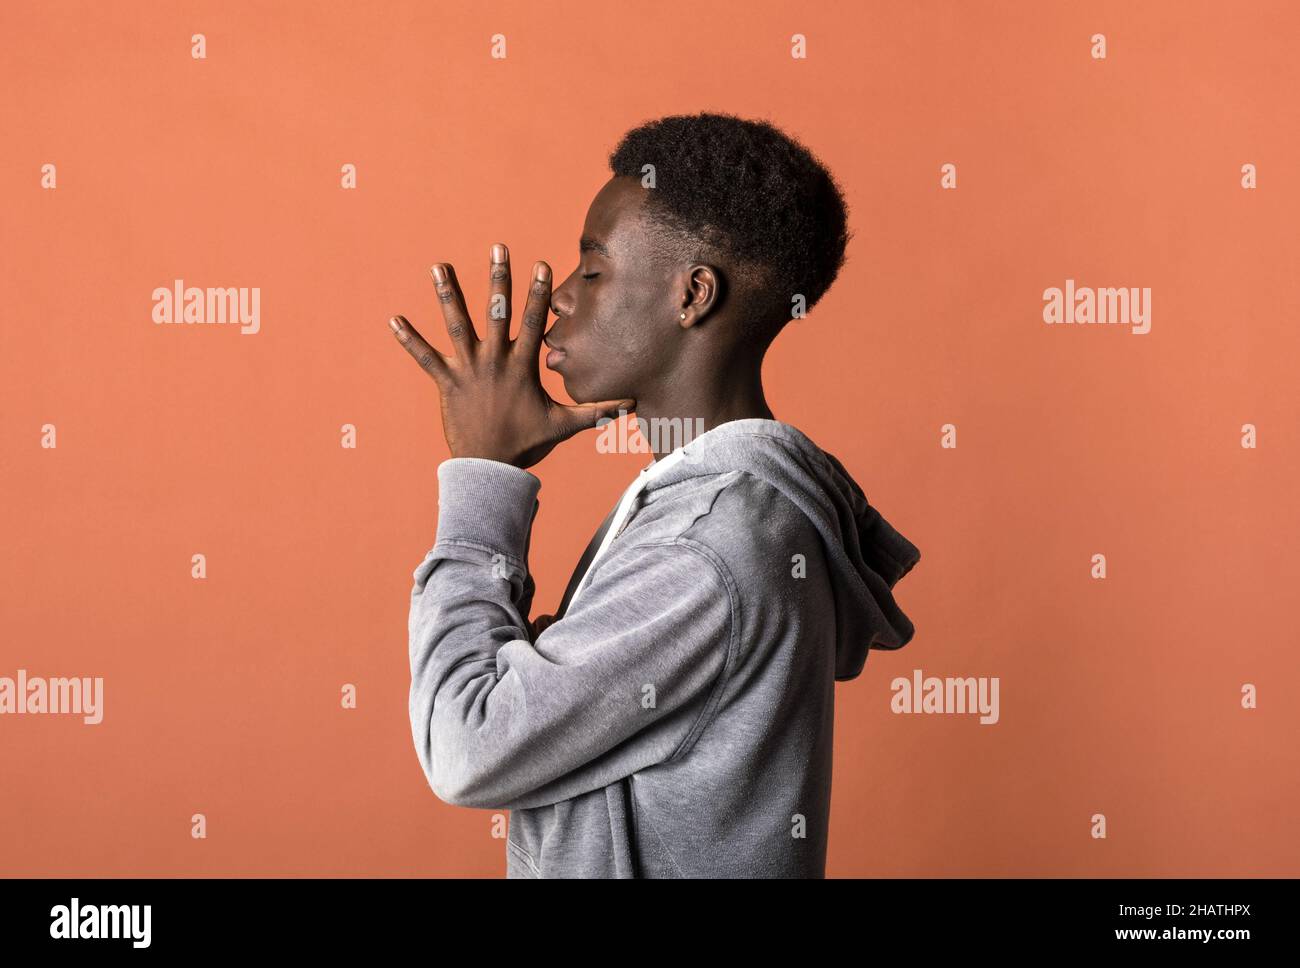 Seitenansicht eines nachdenklichen jungen afroamerikanischen männlichen Models mit dunklem lockigen Haar in grauem Hoodie, der vor orangefarbenem Hintergrund mit geschlossenen Augen und steht Stockfoto